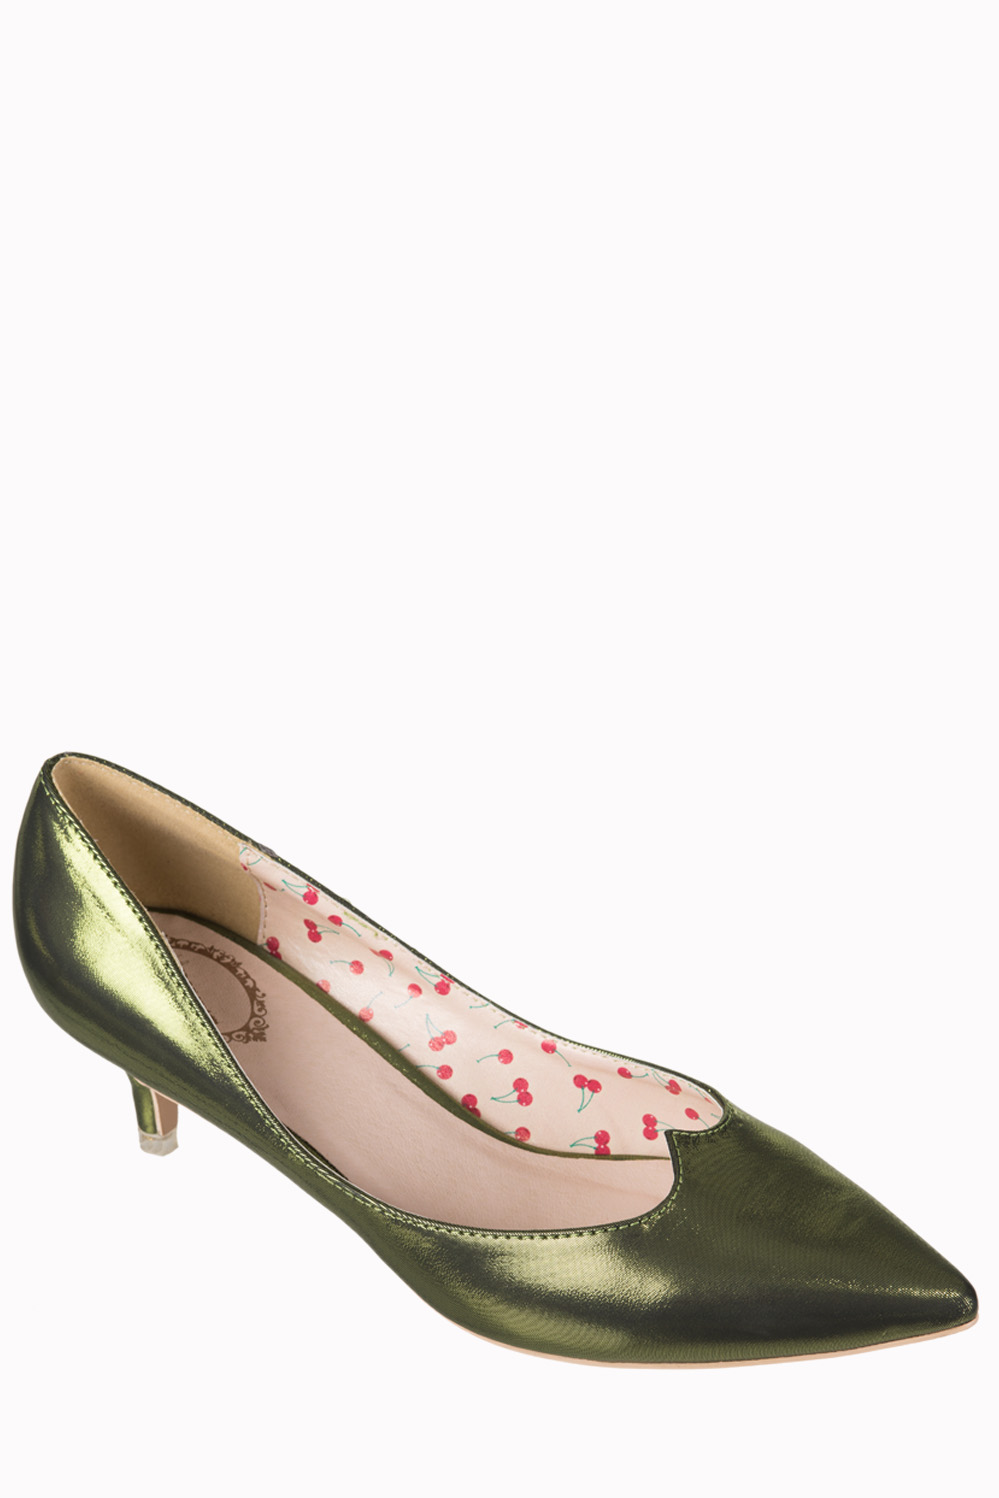 Banned 1940s Olive Green Kitten Heels 